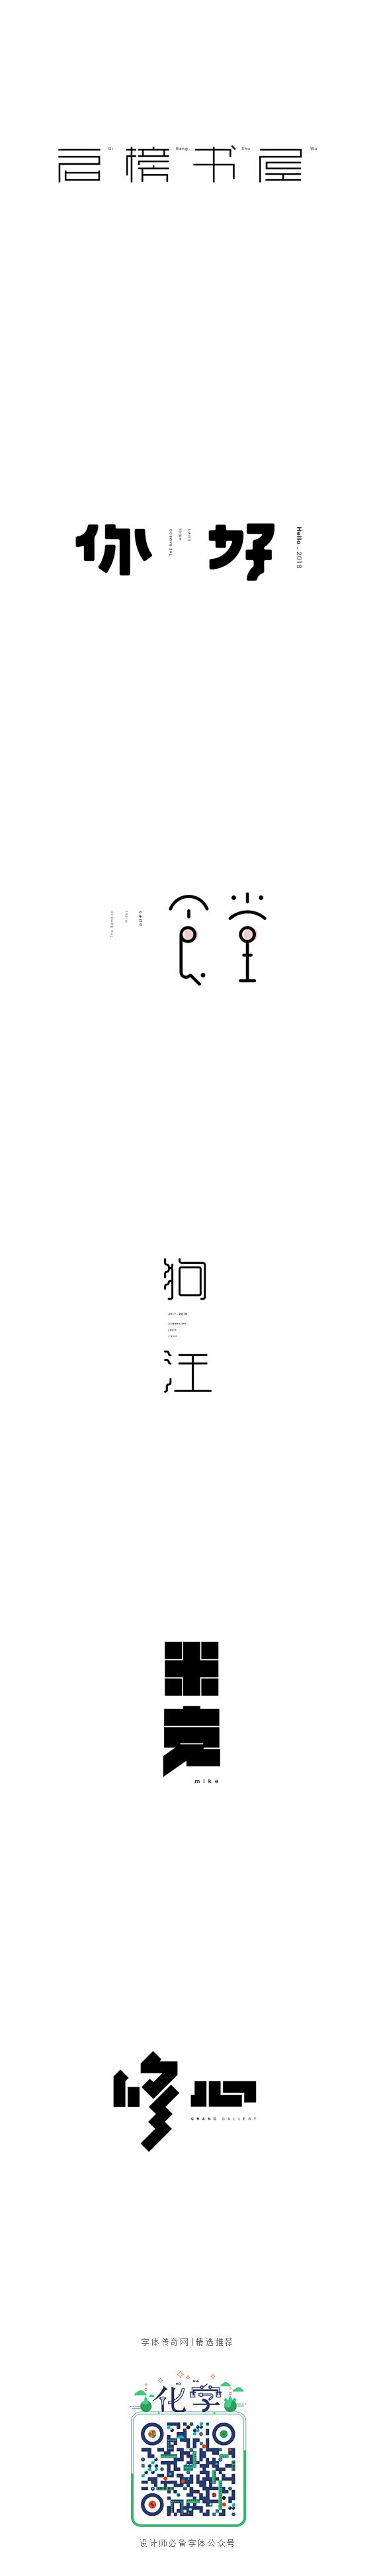 弘弢字研 | 字体设计第八卷-字体传奇网...